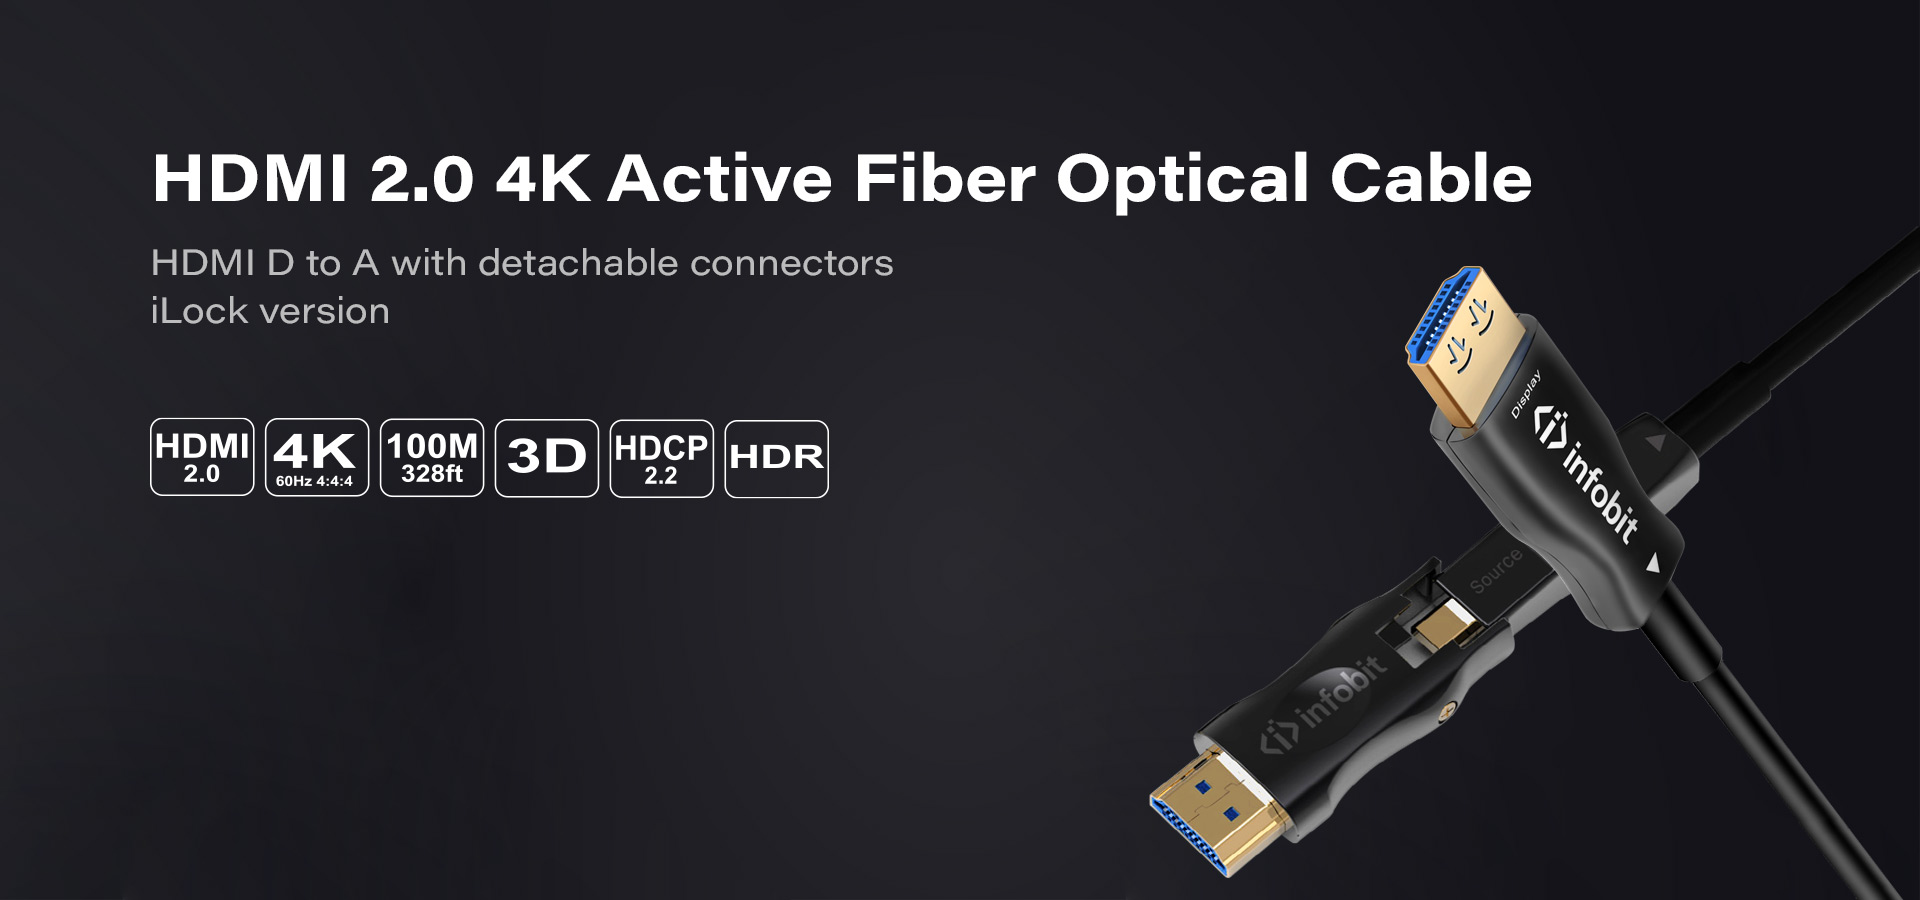 DA: HDMI D to A detachable connectors with iLock version